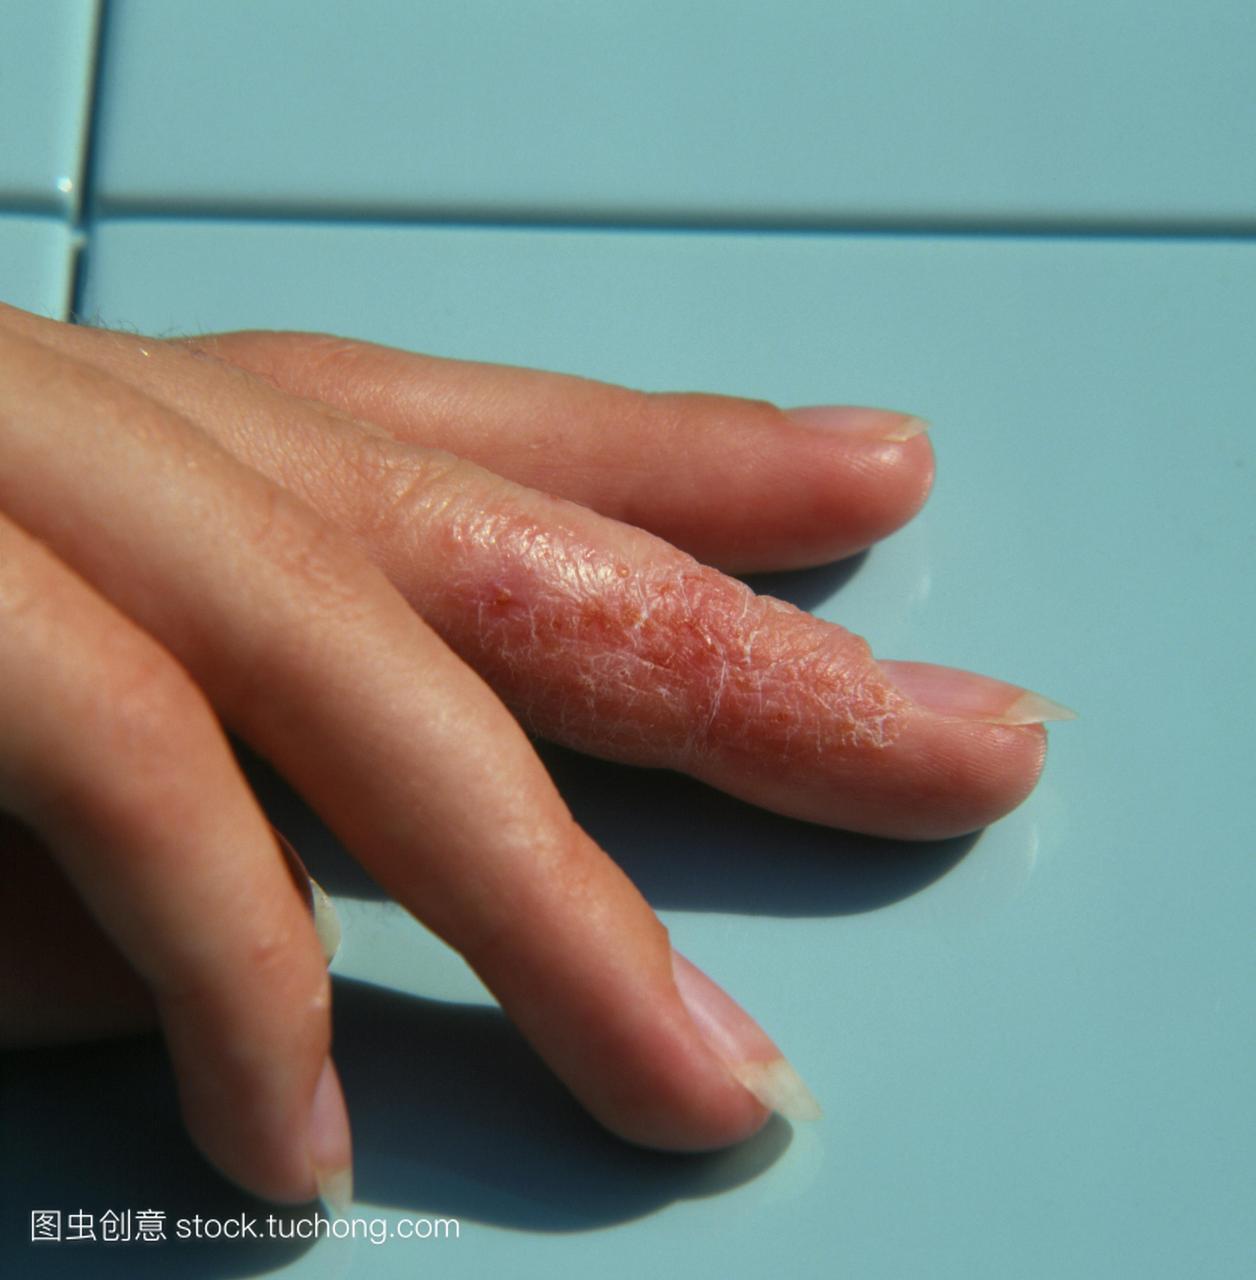 的炎症,主要影响表皮。它会引起瘙痒和红疹,通